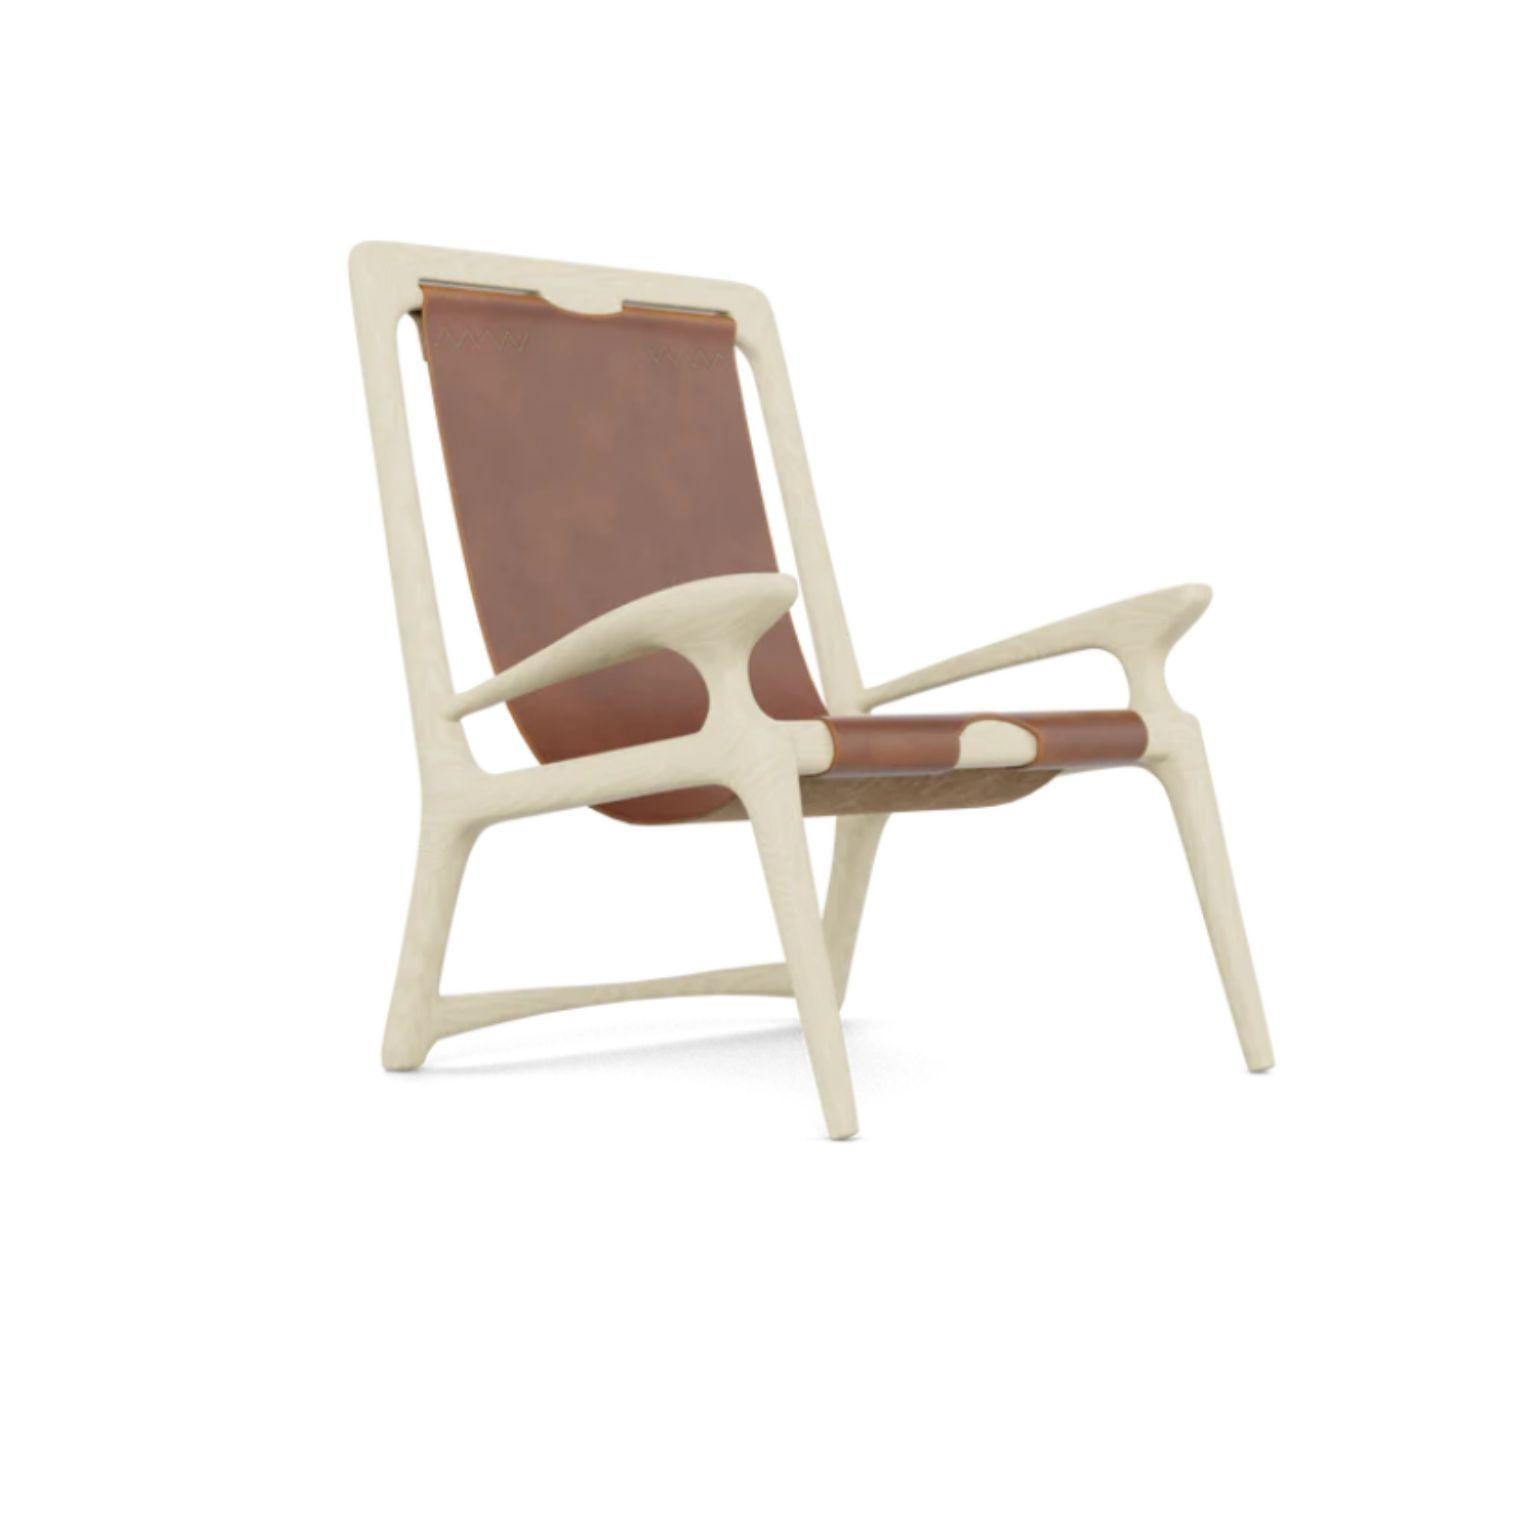 Fauteuil sling en frêne blanc et cuir mod 2 par Fernweh Woodworking
Dimensions : 
L 27